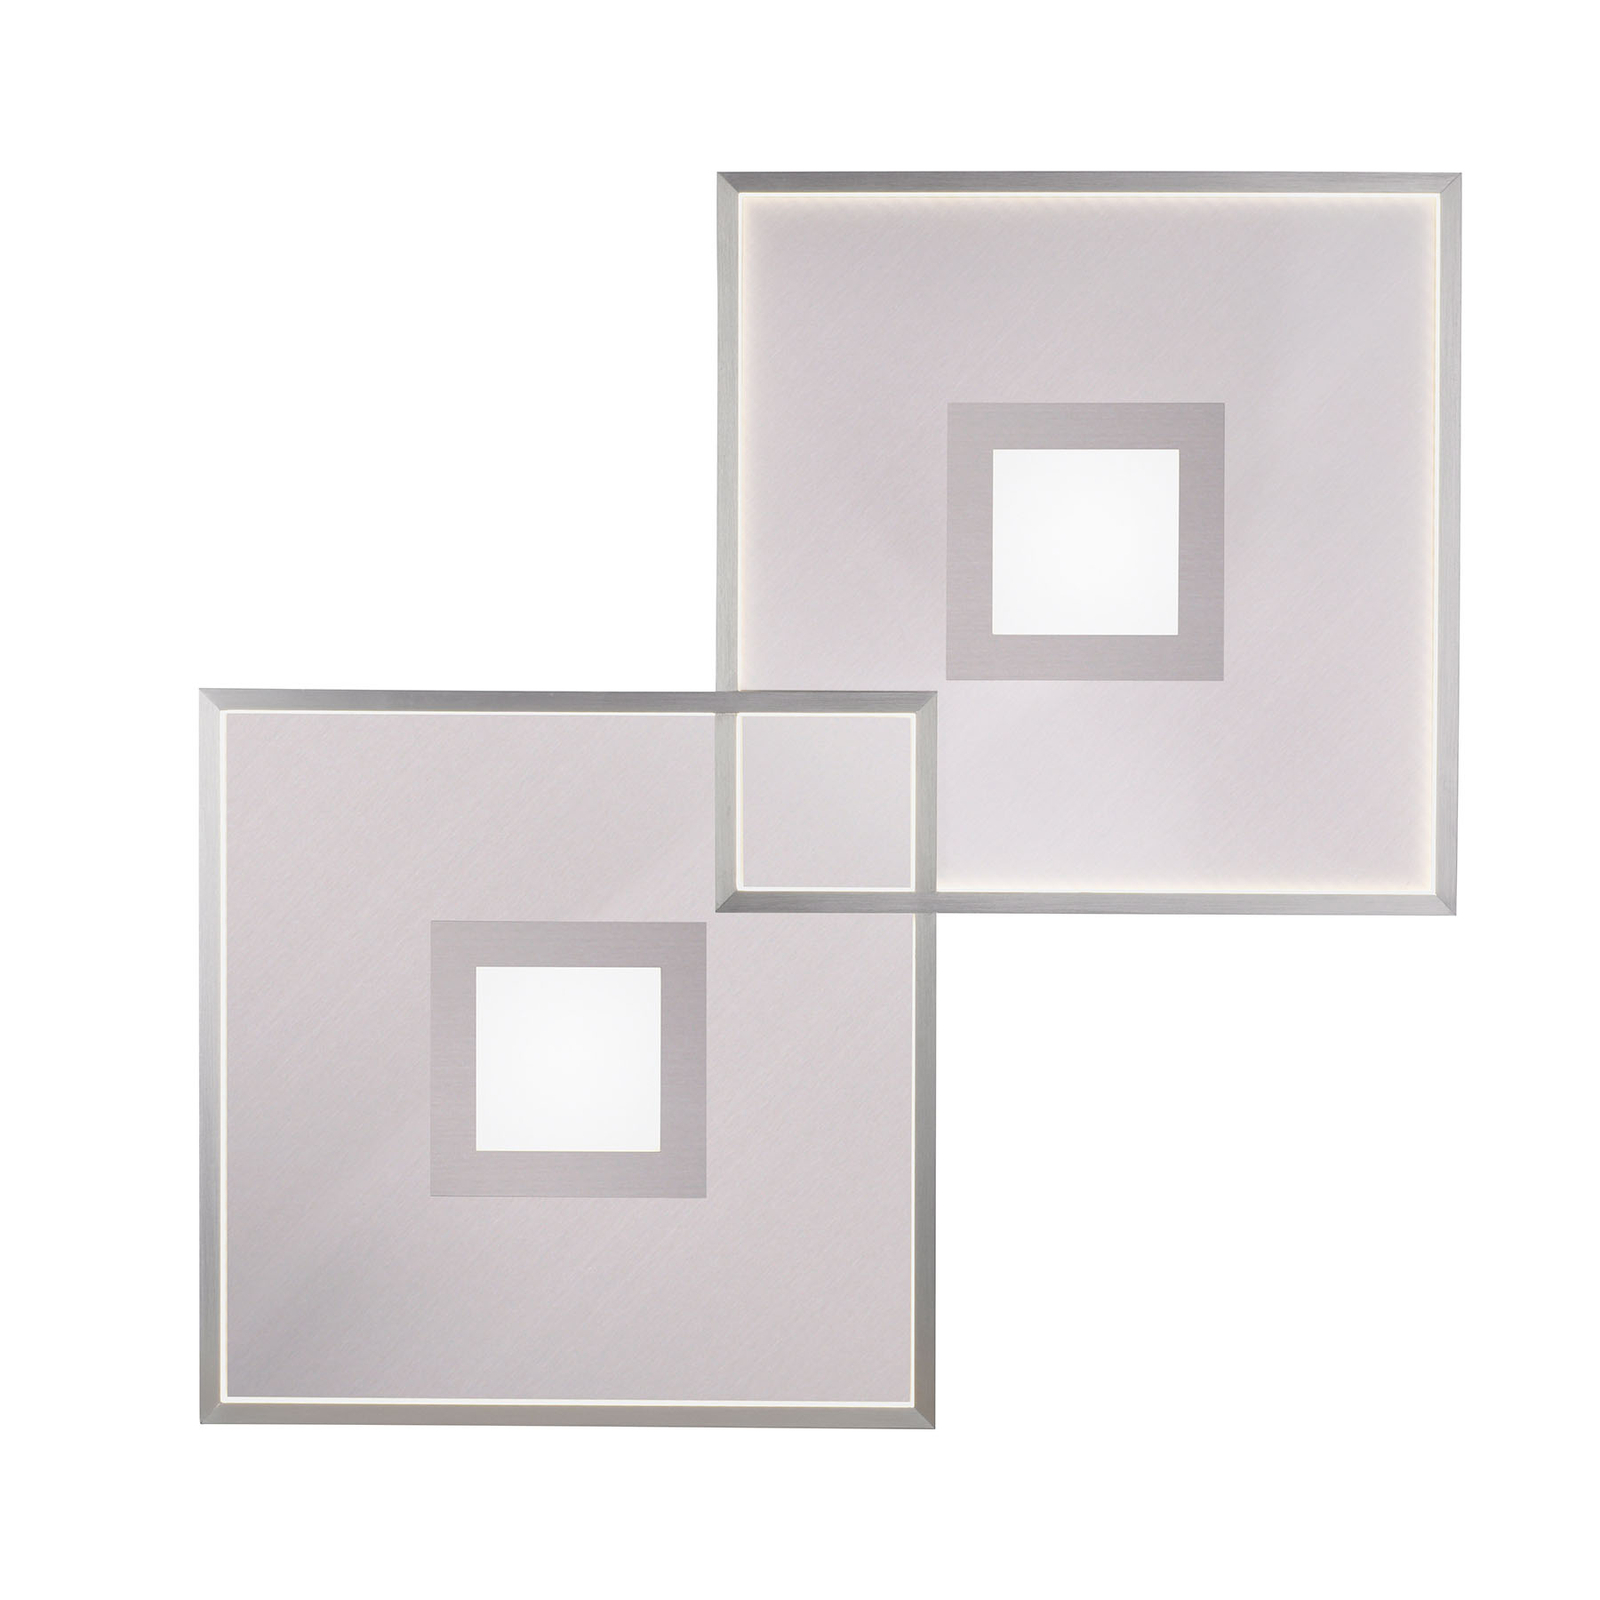 LED stropní světlo Amara, dva čtverce, stříbrná